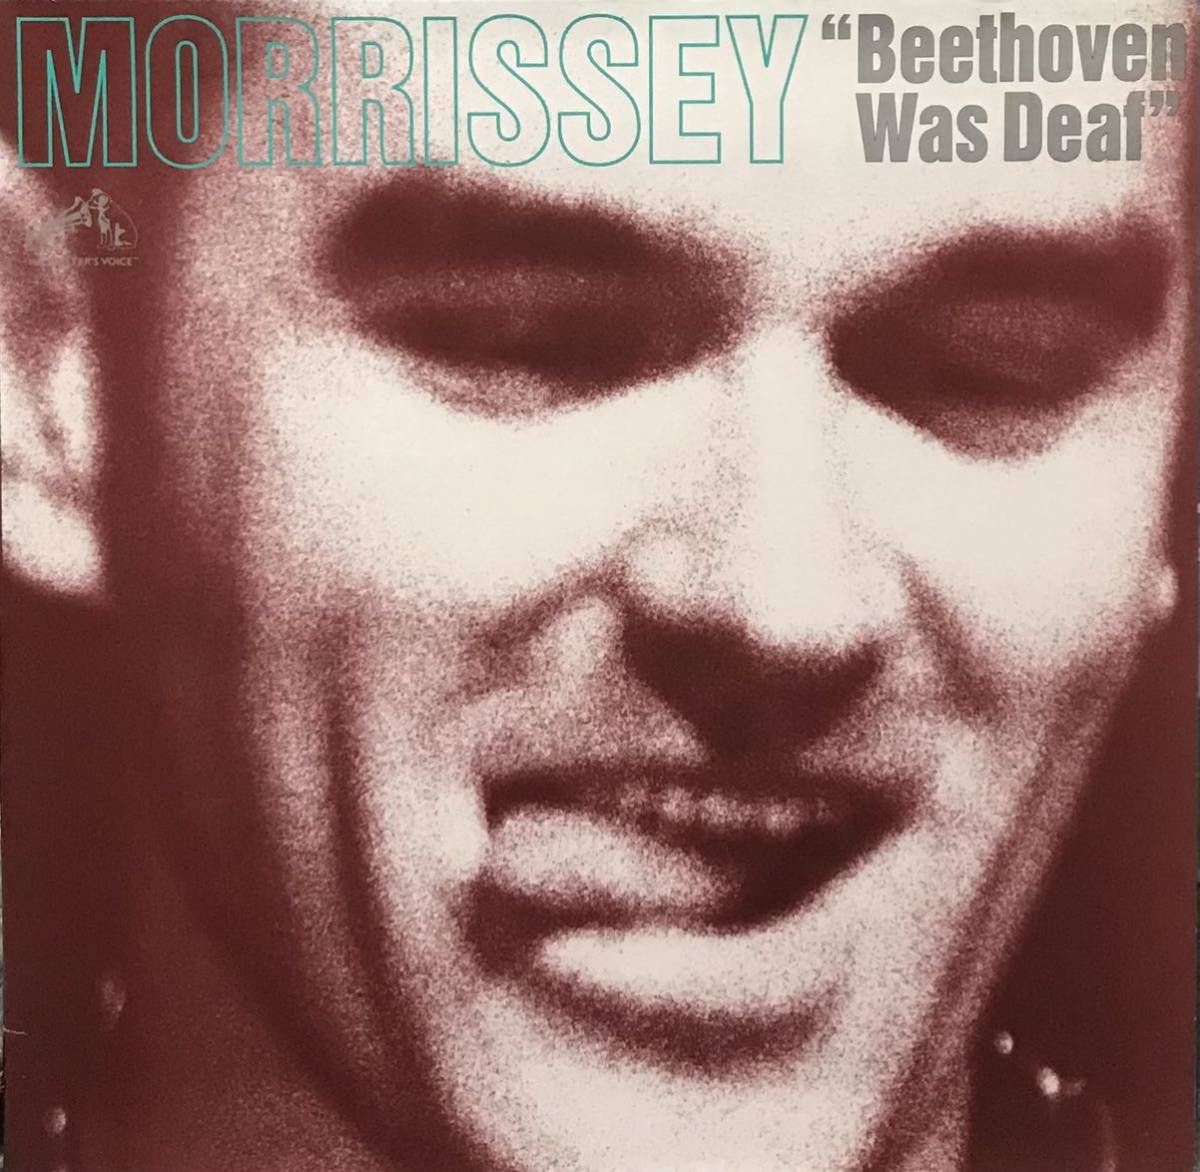 【数量は多】 Supreme Manchester ザ・スミス Smiths The ベートーベン・ワズ・デフ モリッシー 】Live Deaf Was Beethoven Morrissey 【 Paris UK Vinyl Morrissey